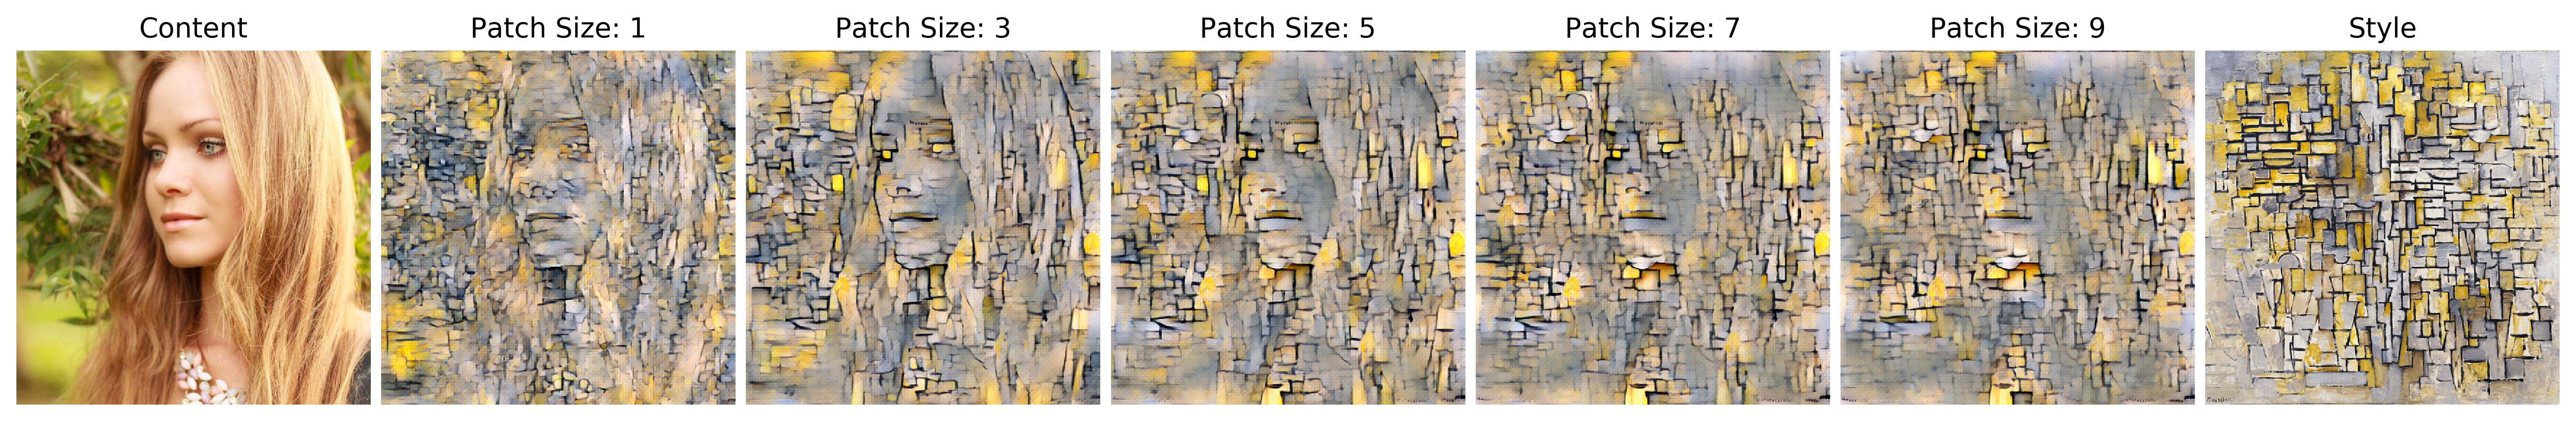 patch_size_variation